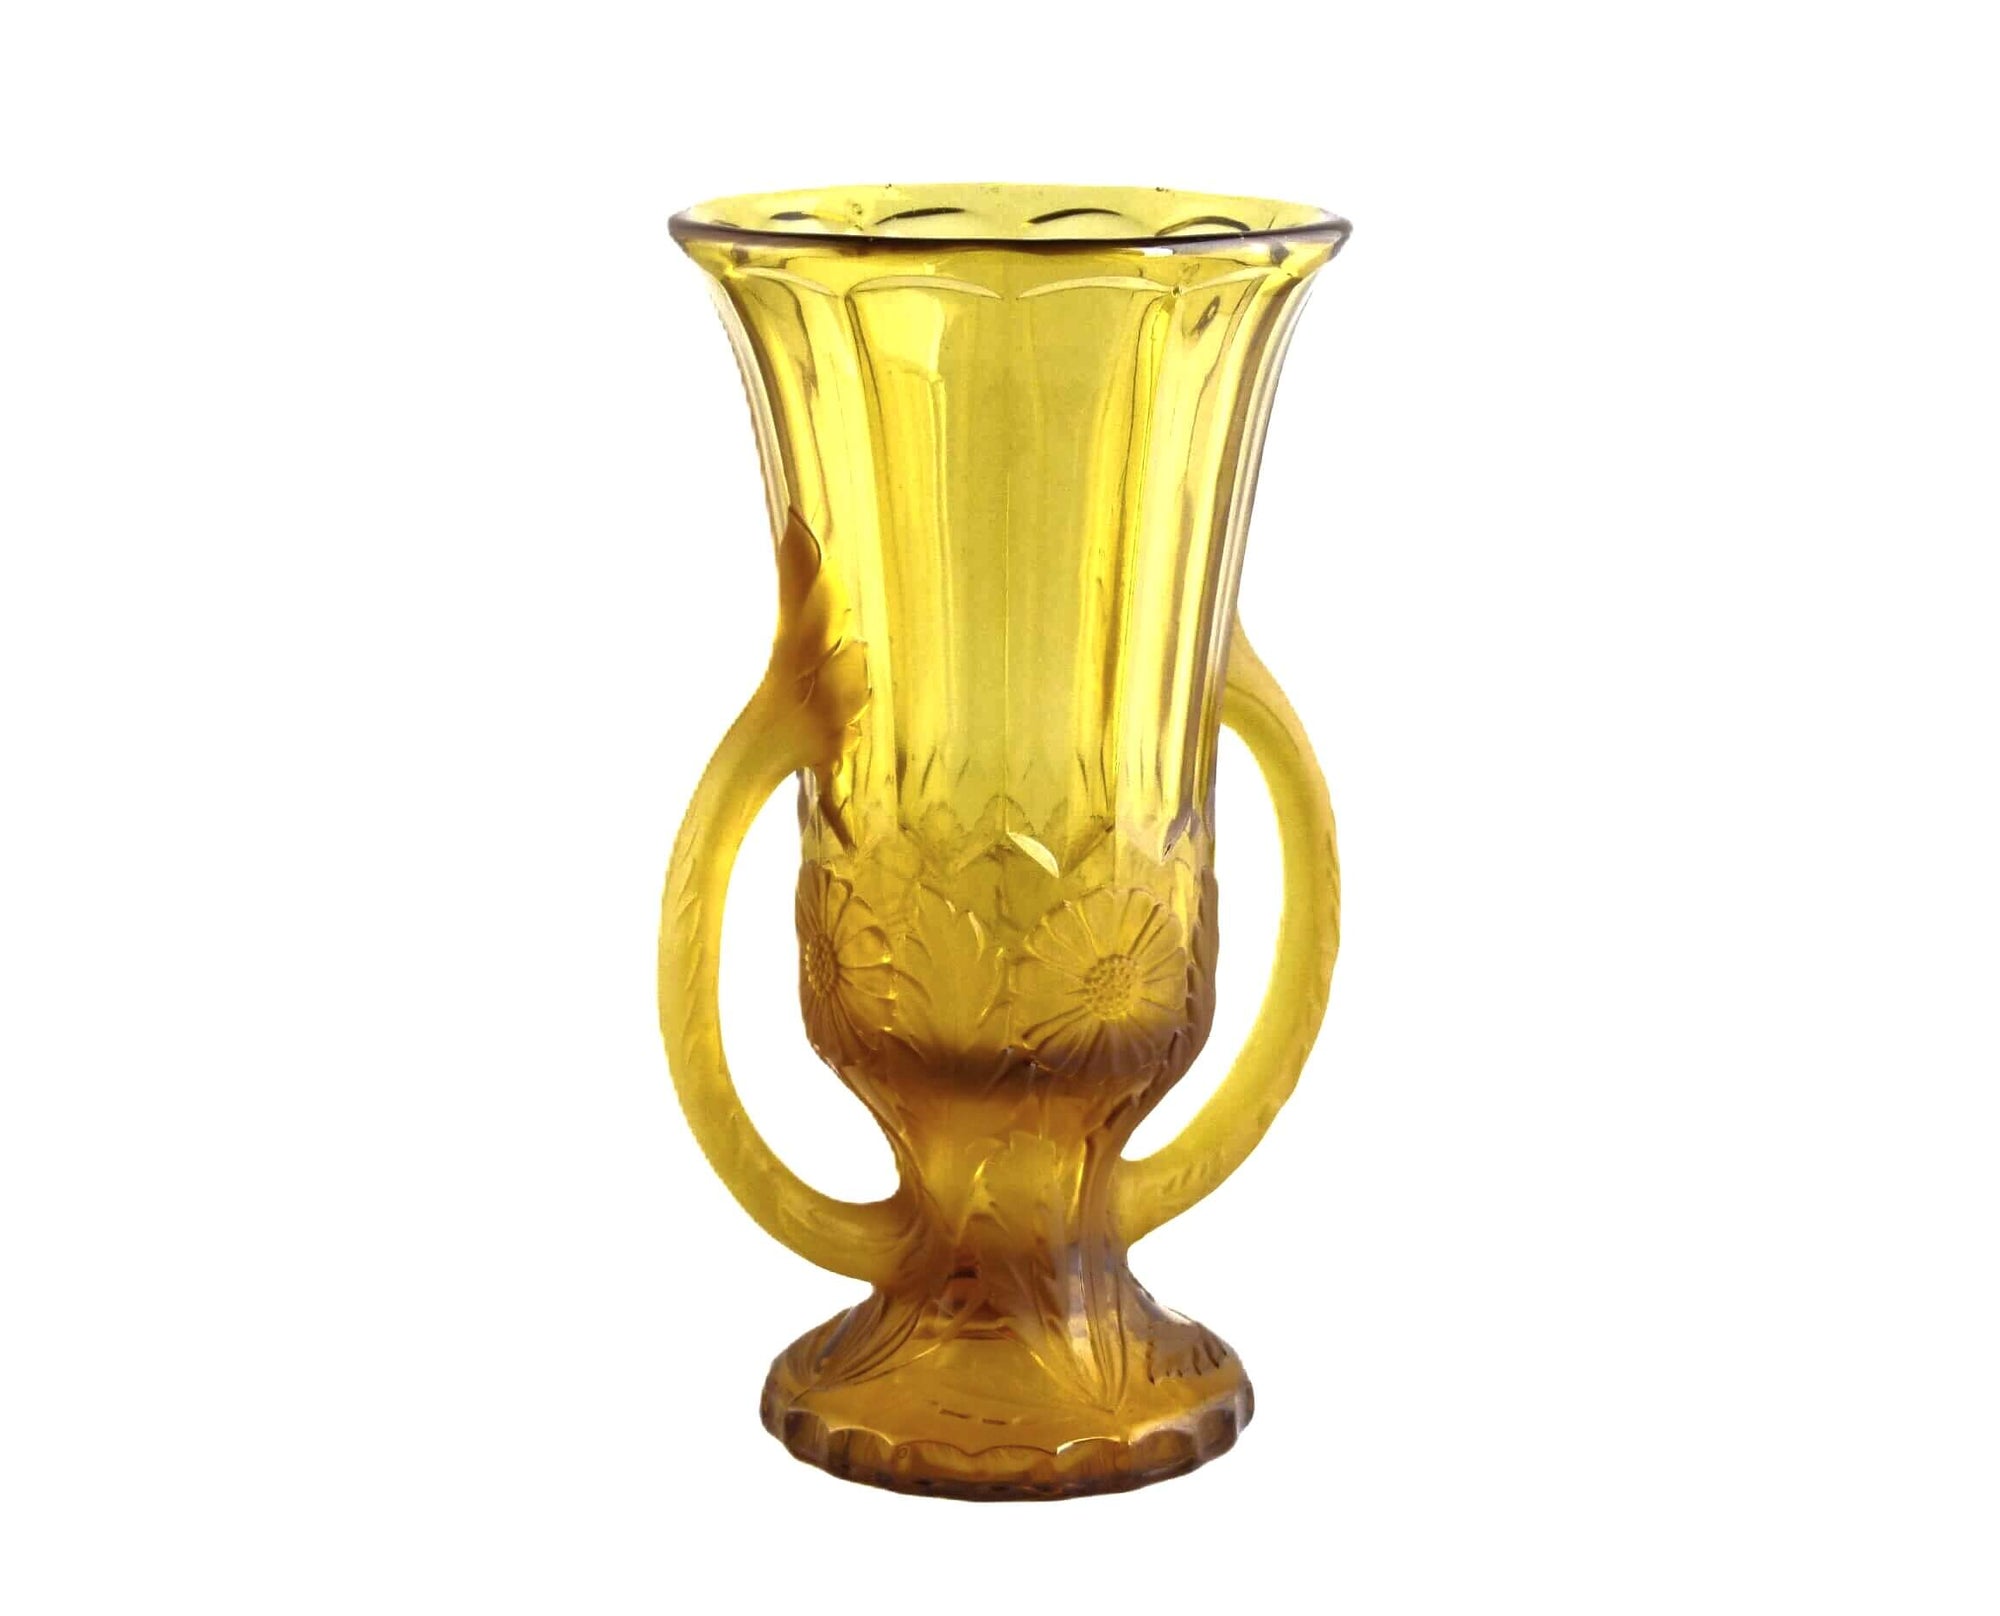 Art Deco Jobling Amber Glass Vase, "Dandelion", 1930's